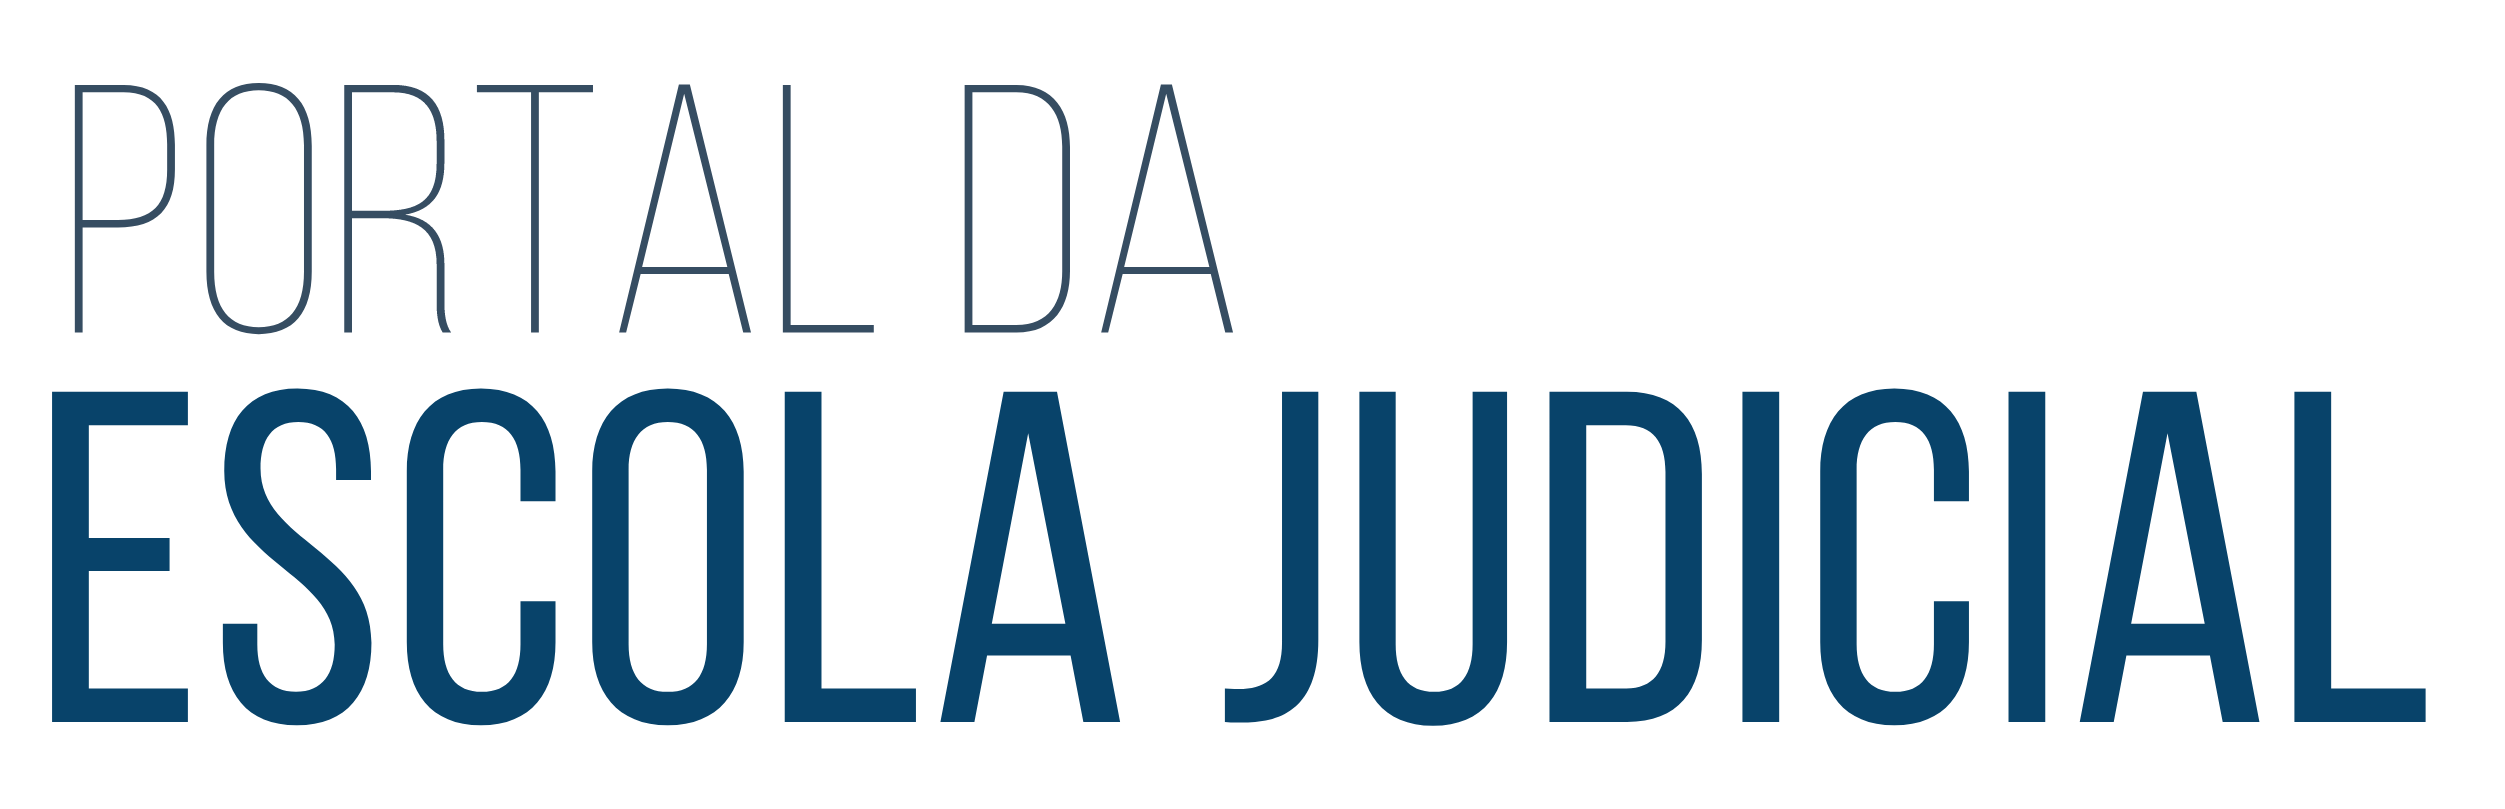 Banner do portal da escola judicial